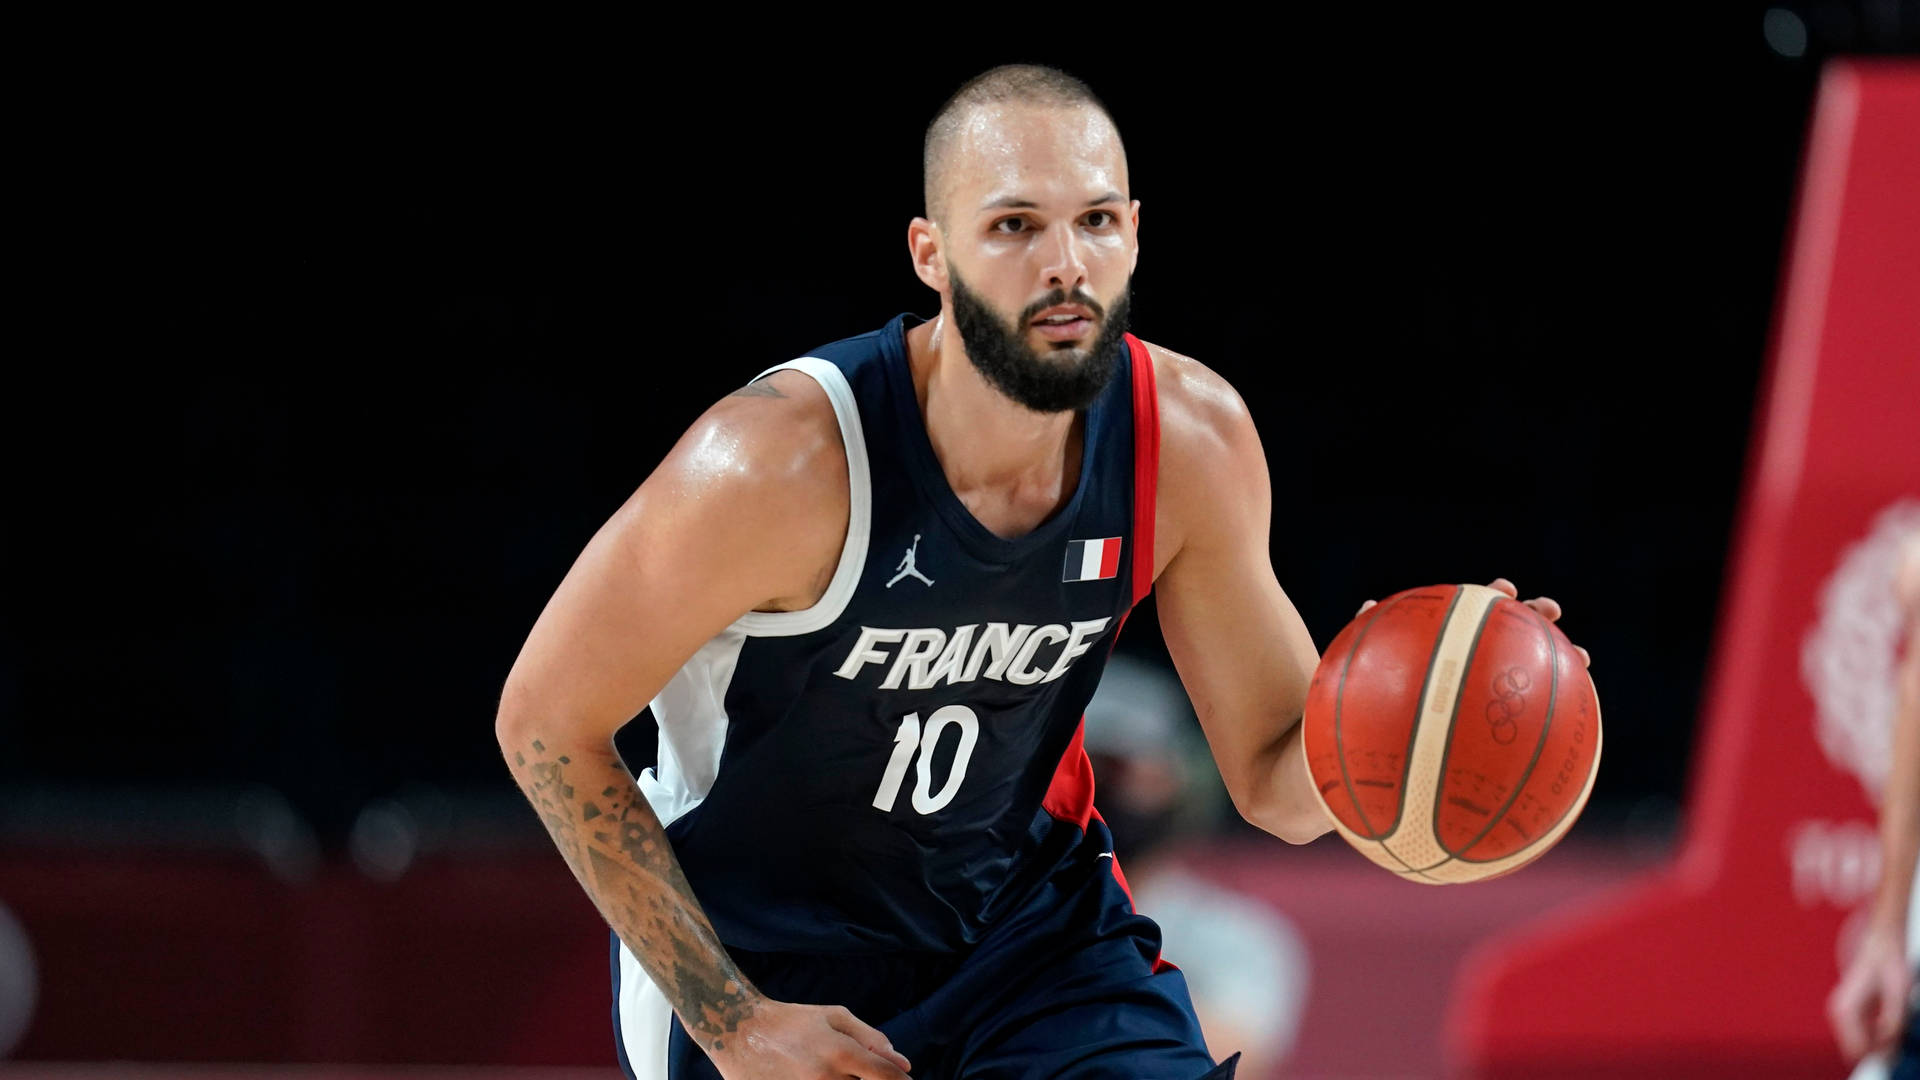 Evanfournier, Fransk Basketspelare, Fiba 2019. Wallpaper